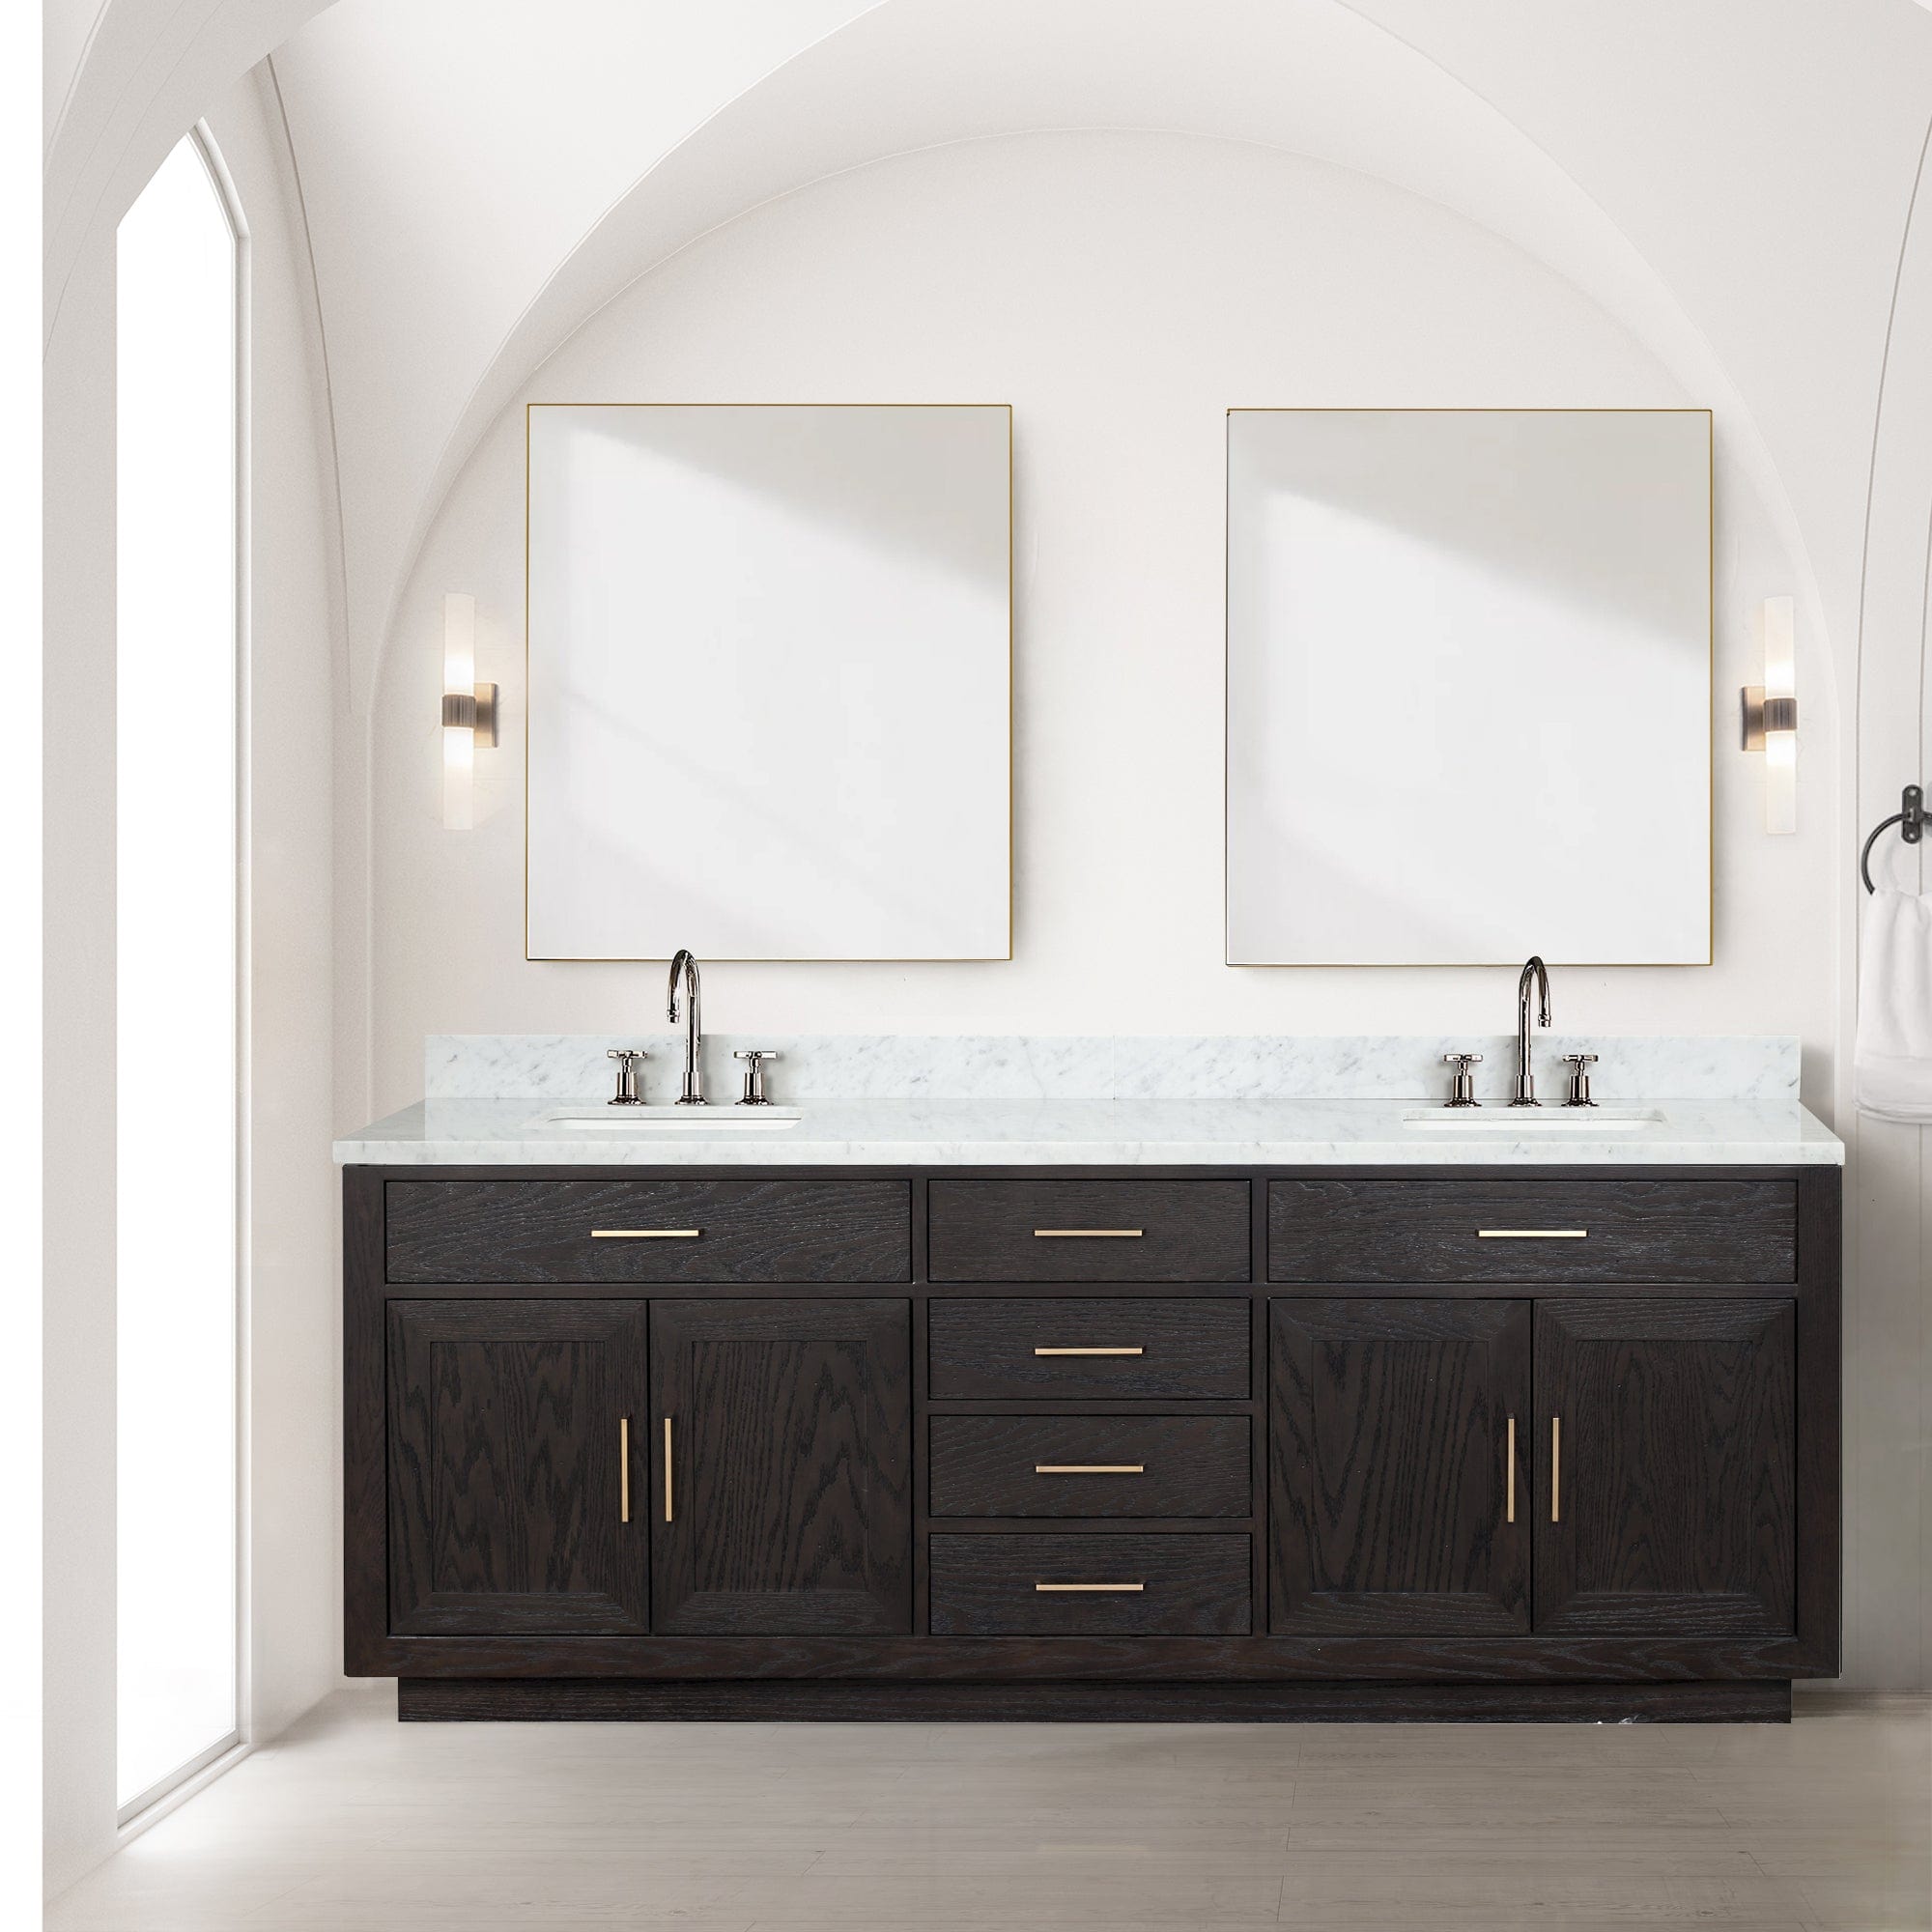 Bell + Modern Bathroom Vanity 84